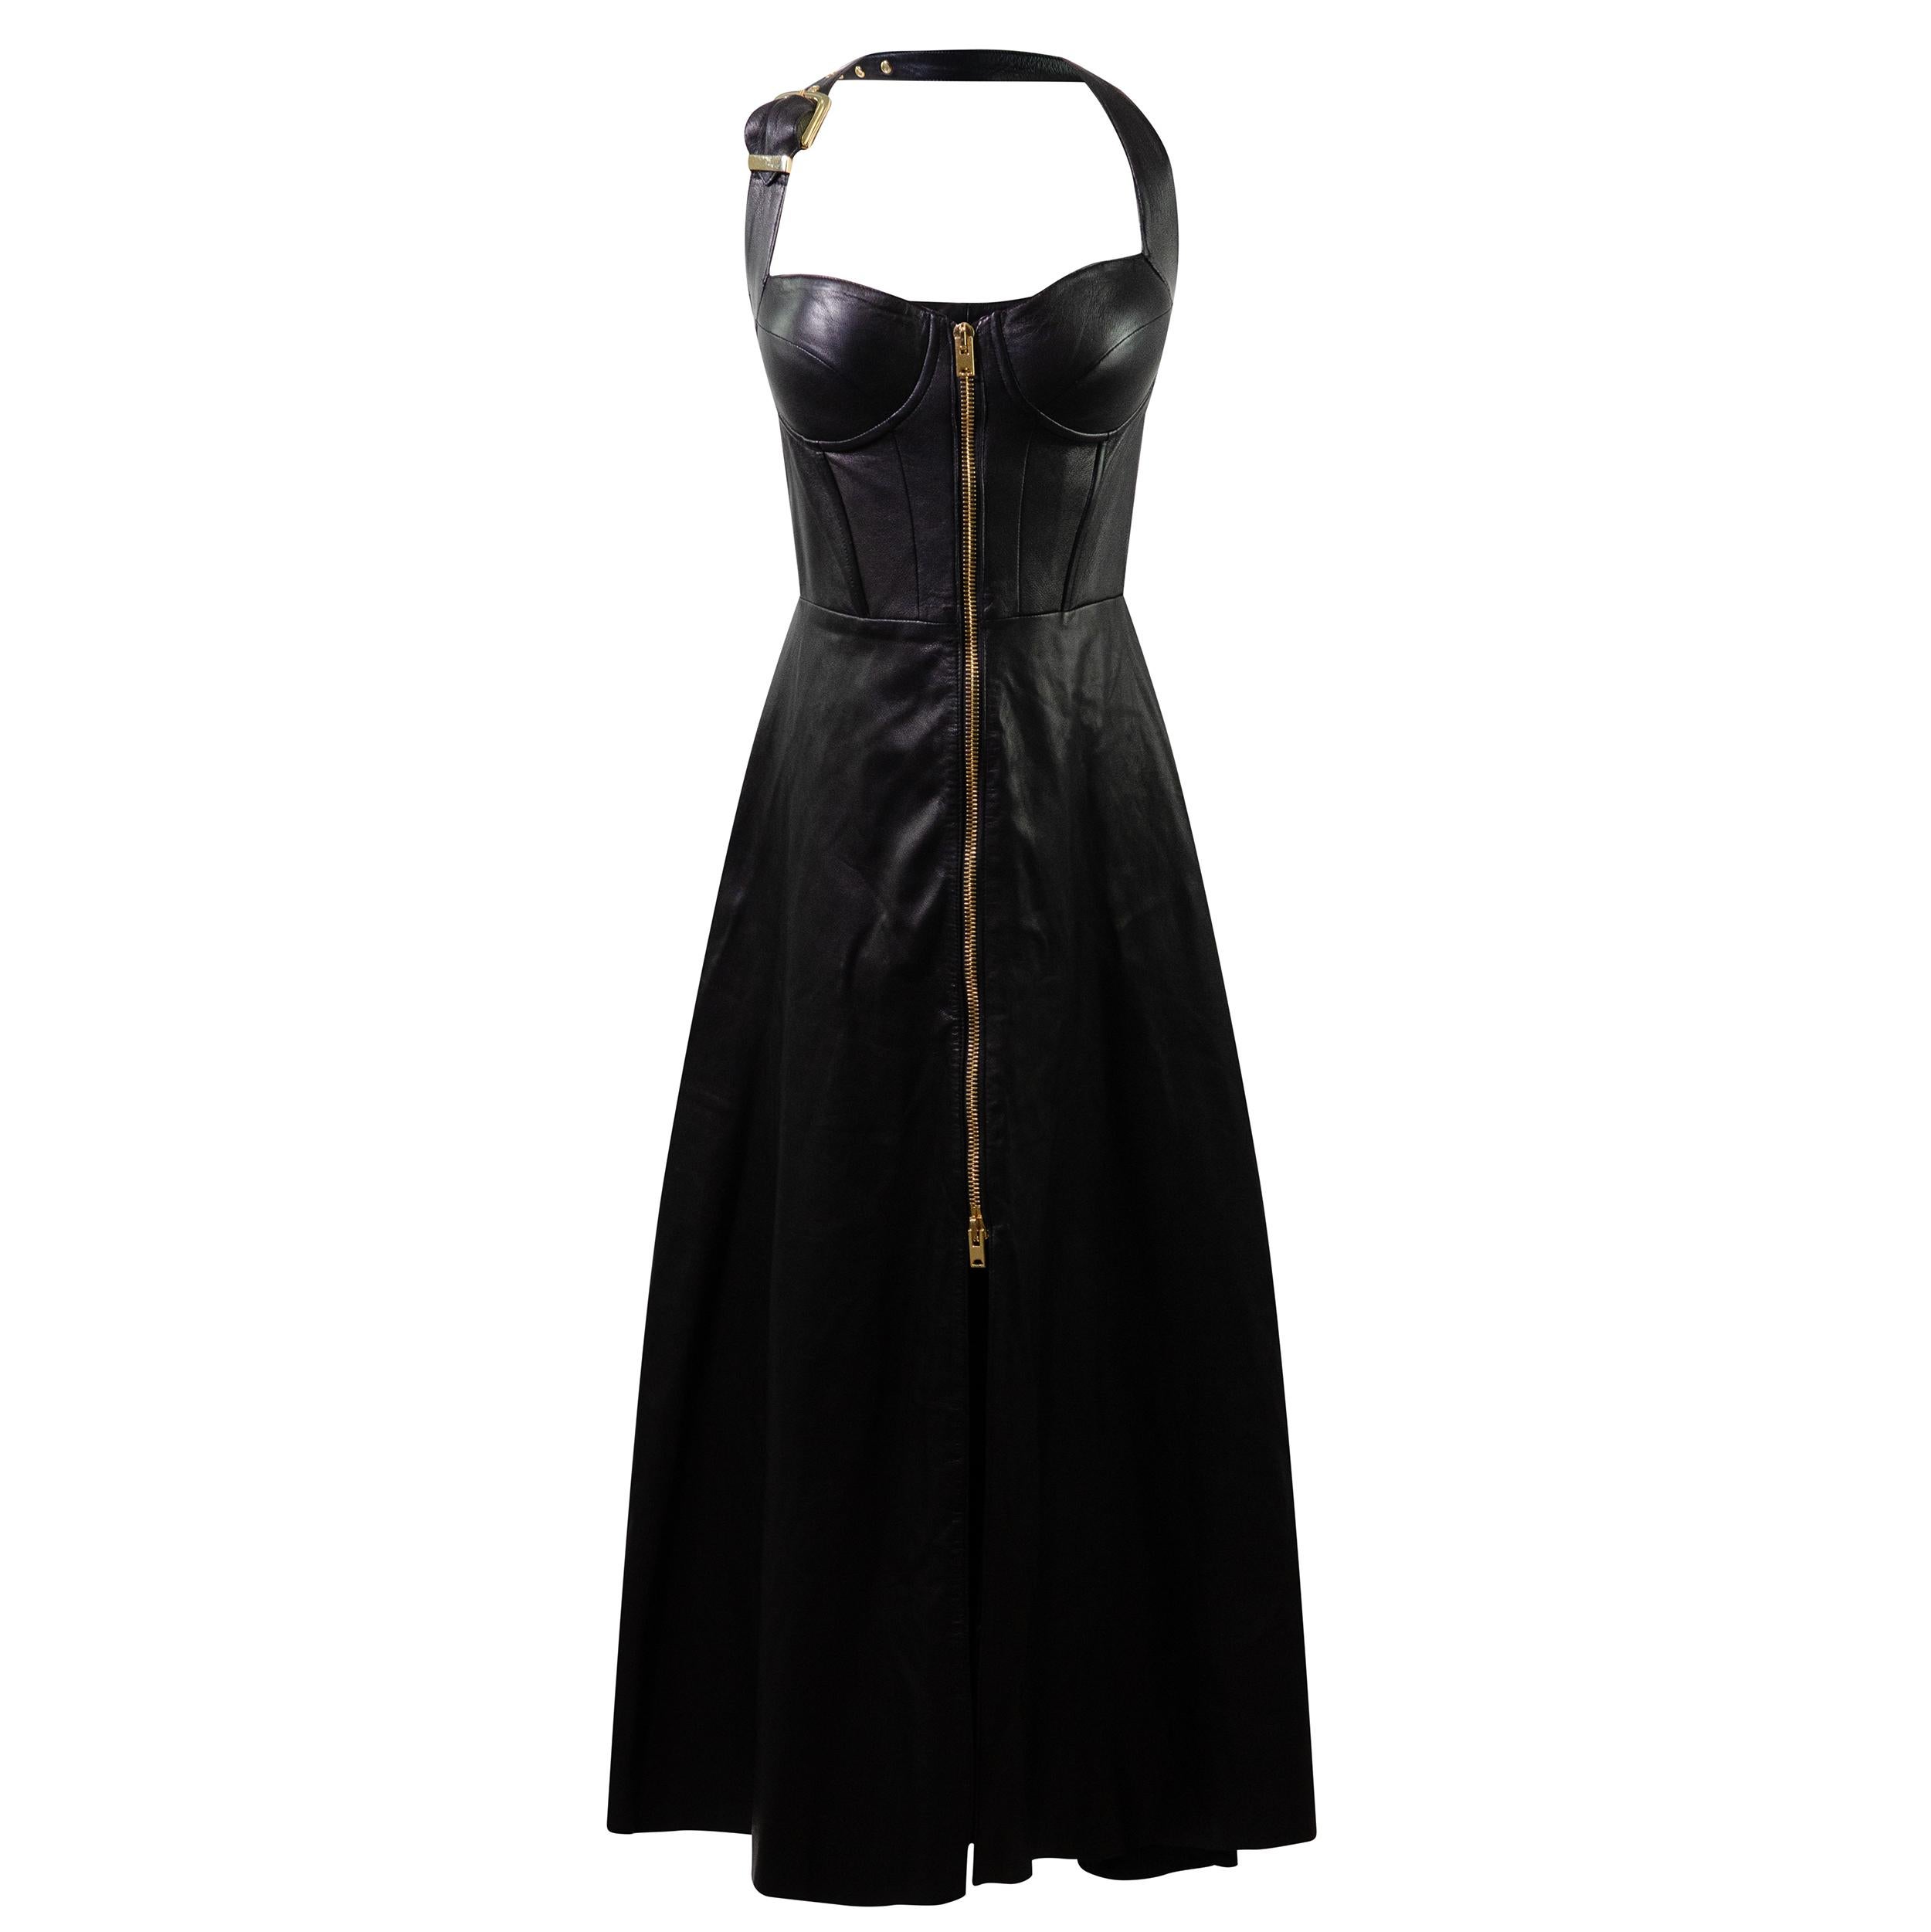 NATASHA ZINKO Leather Zip up Corset Dress S For Sale